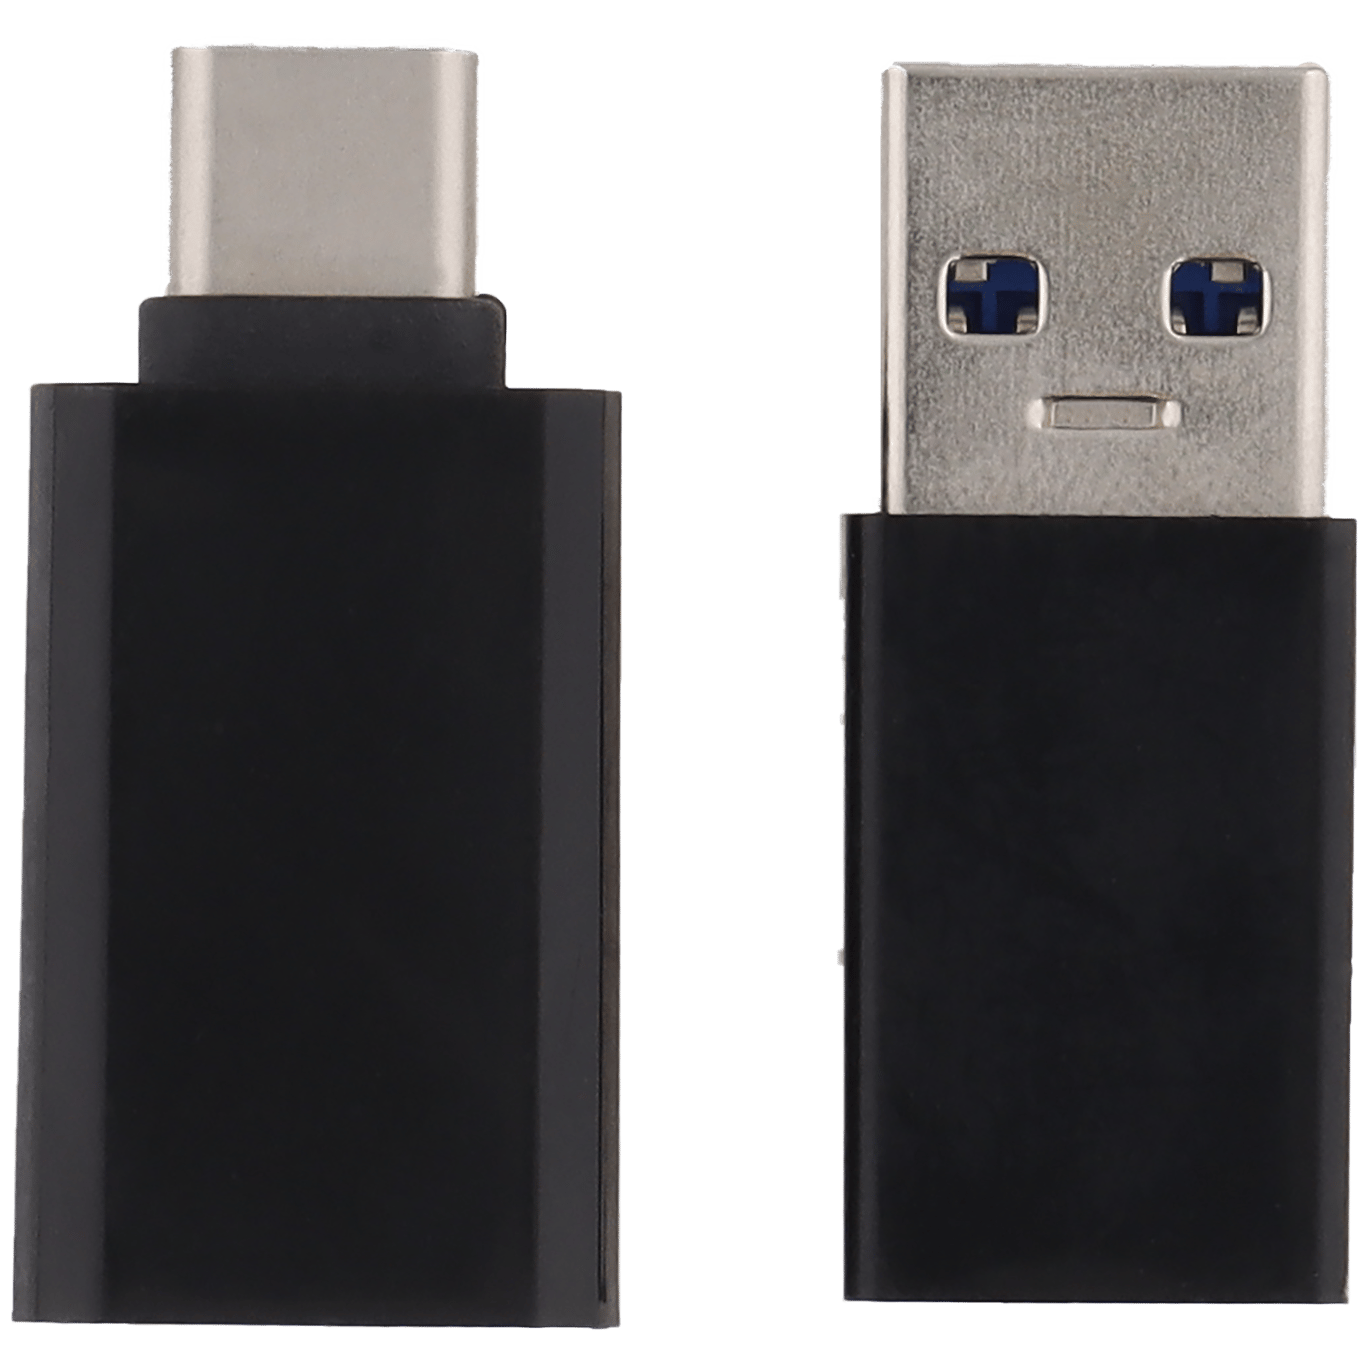 herten Verloren hart groep Maxxter USB type-C adapterset | Action.com